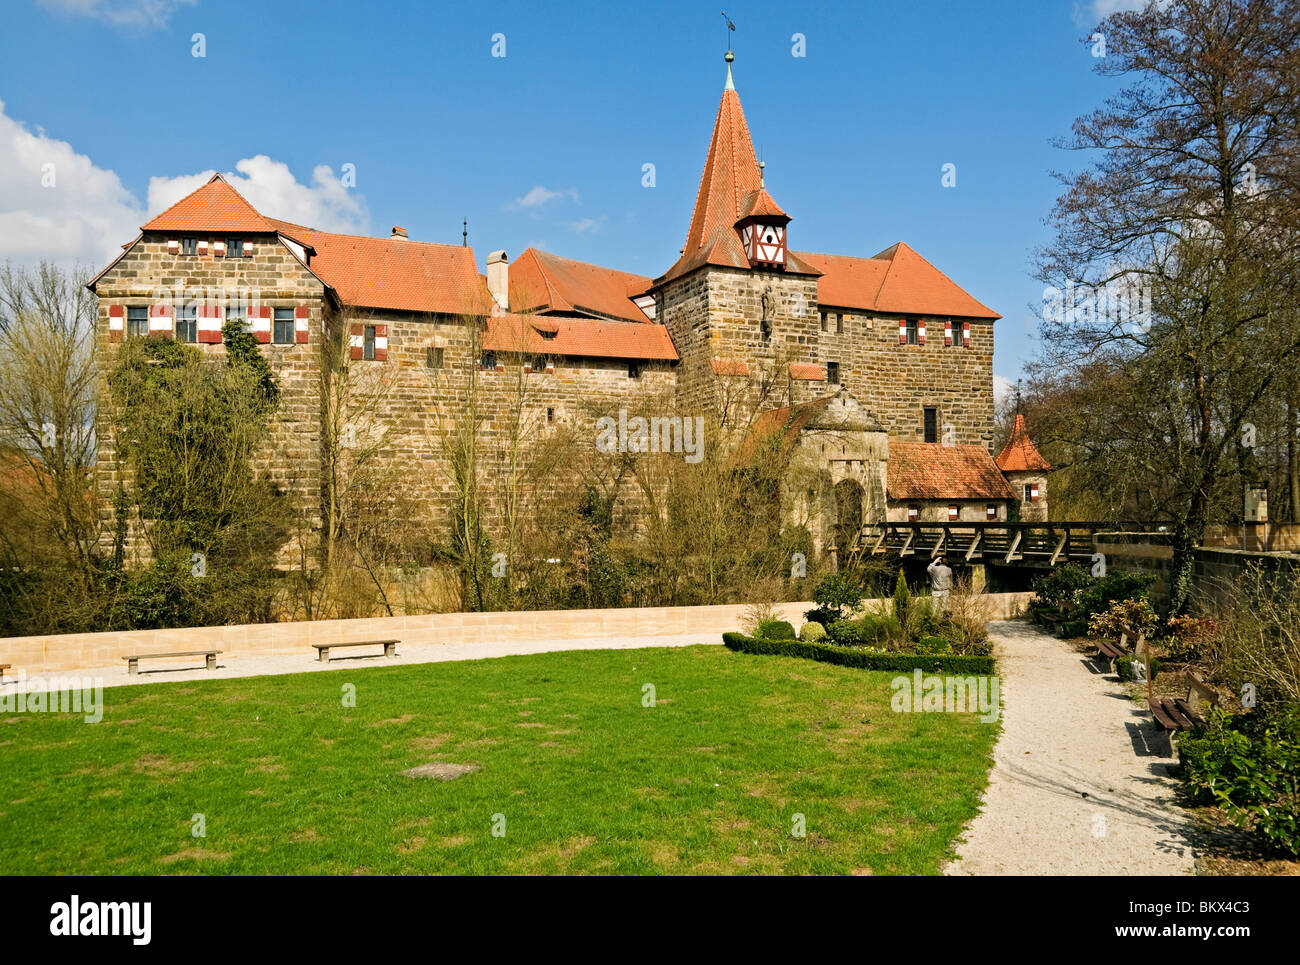 Le Kaiserburg ou Wenzelschloss à partir de 1360 à gunzenhausen, près de Nuremberg, Franconia, Bavaria, Germany. Banque D'Images